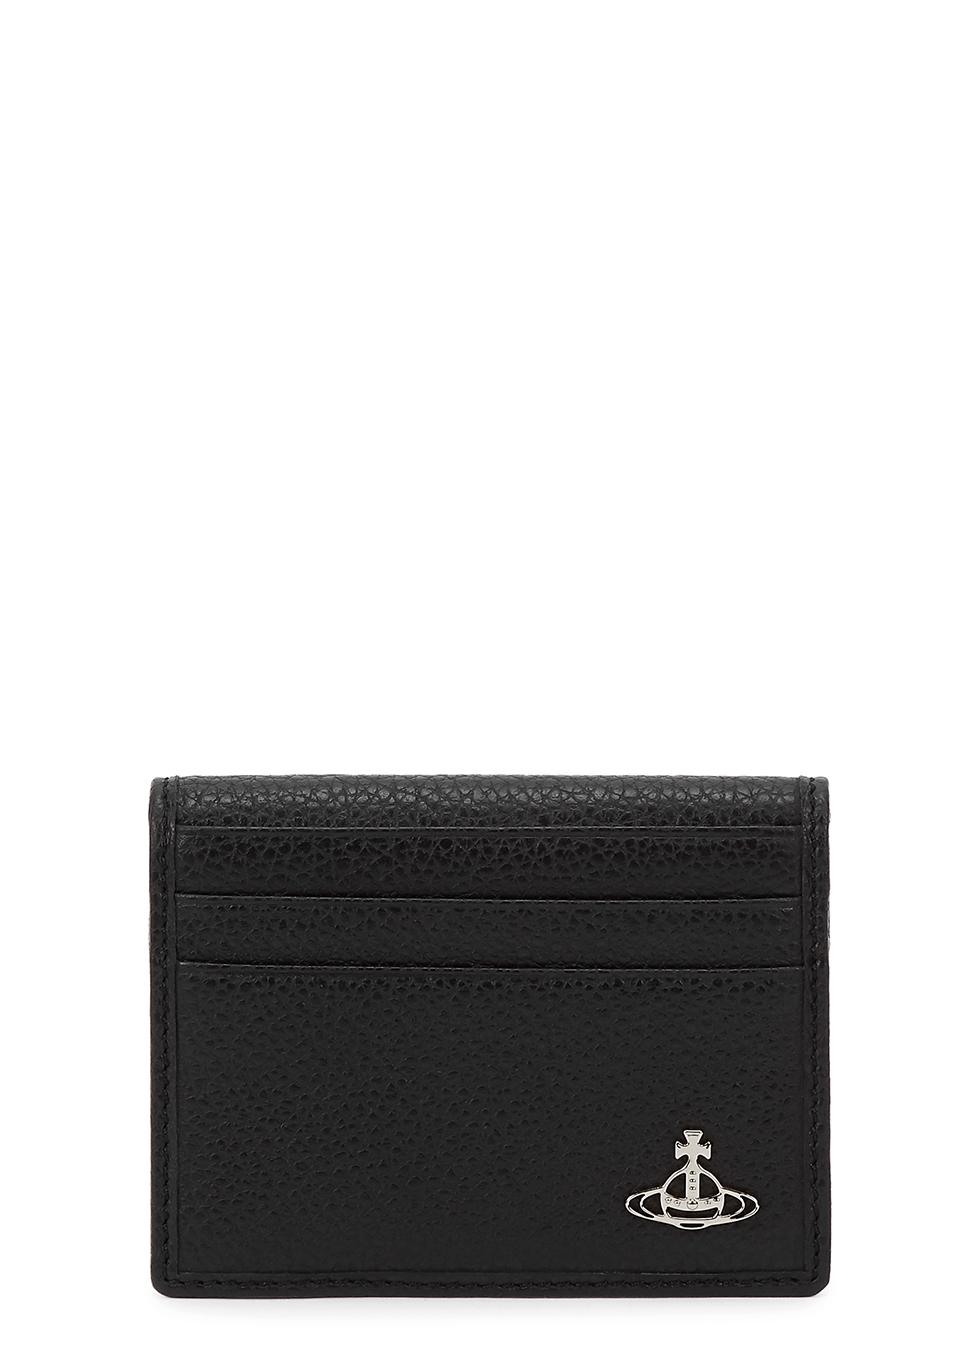 Vivienne Westwood Black Logo Leather Card Holder | Lyst UK